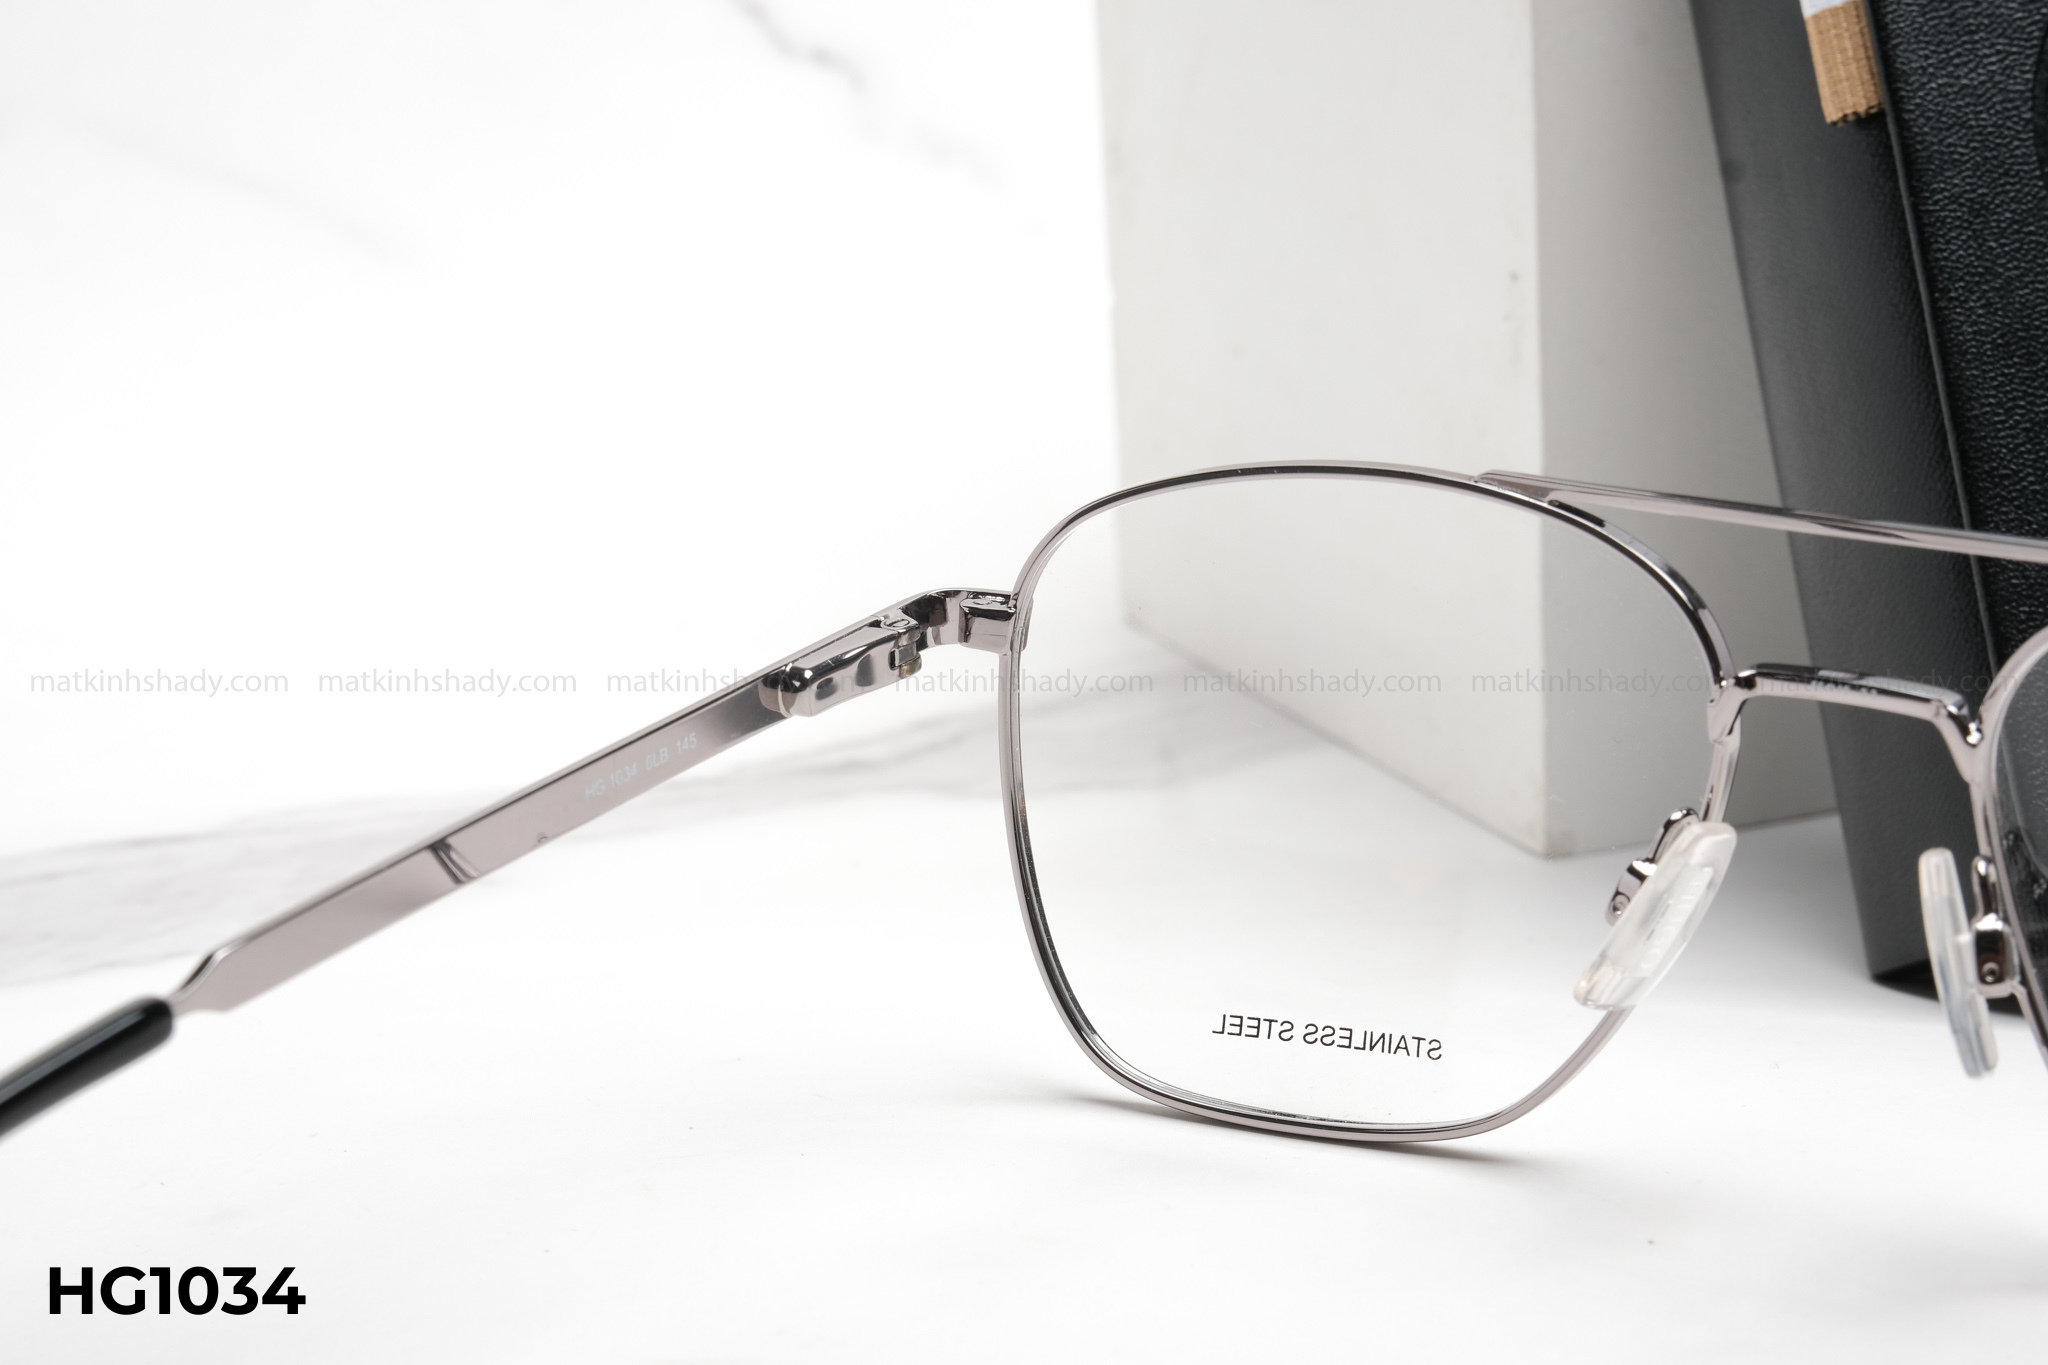  Hugo Boss Eyewear - Glasses - HG1034 